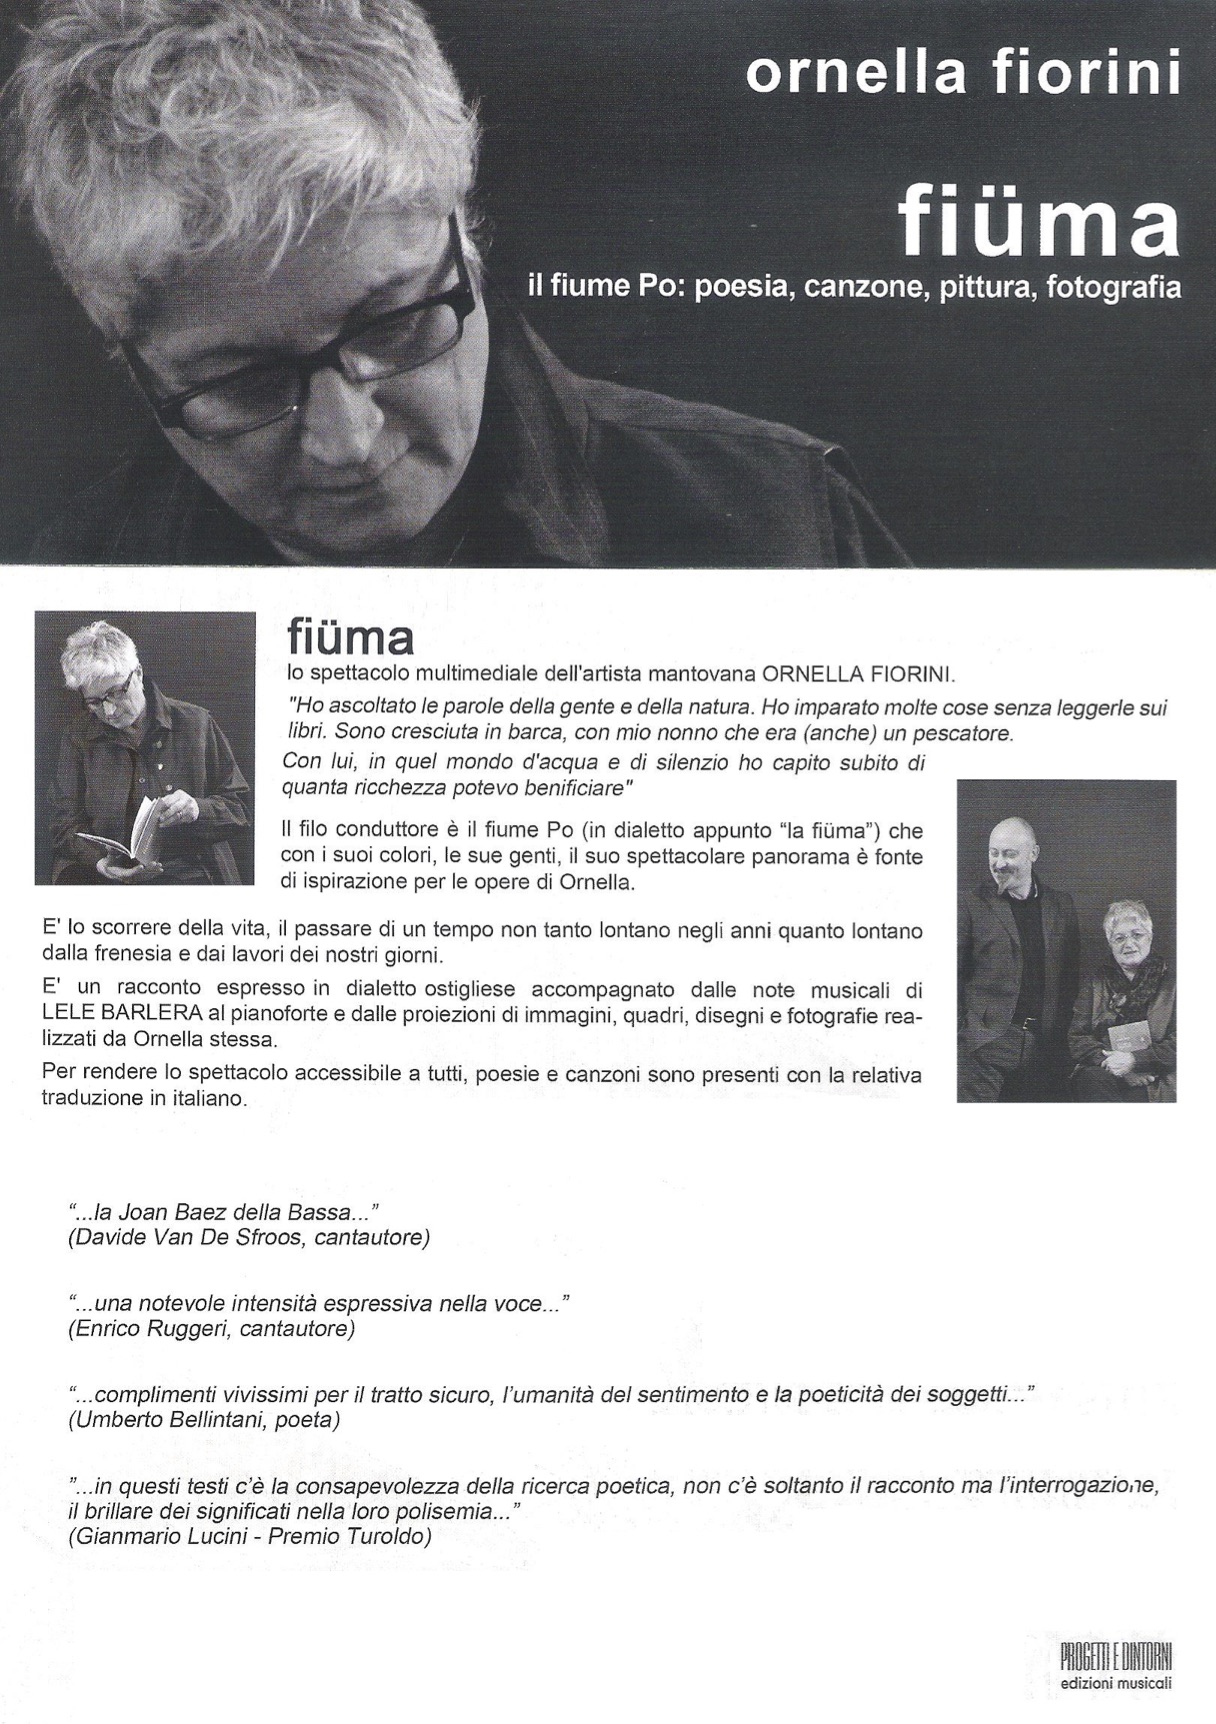 Fiuma - spettacolo di Ornella Fiorini musica pittura e fotografia